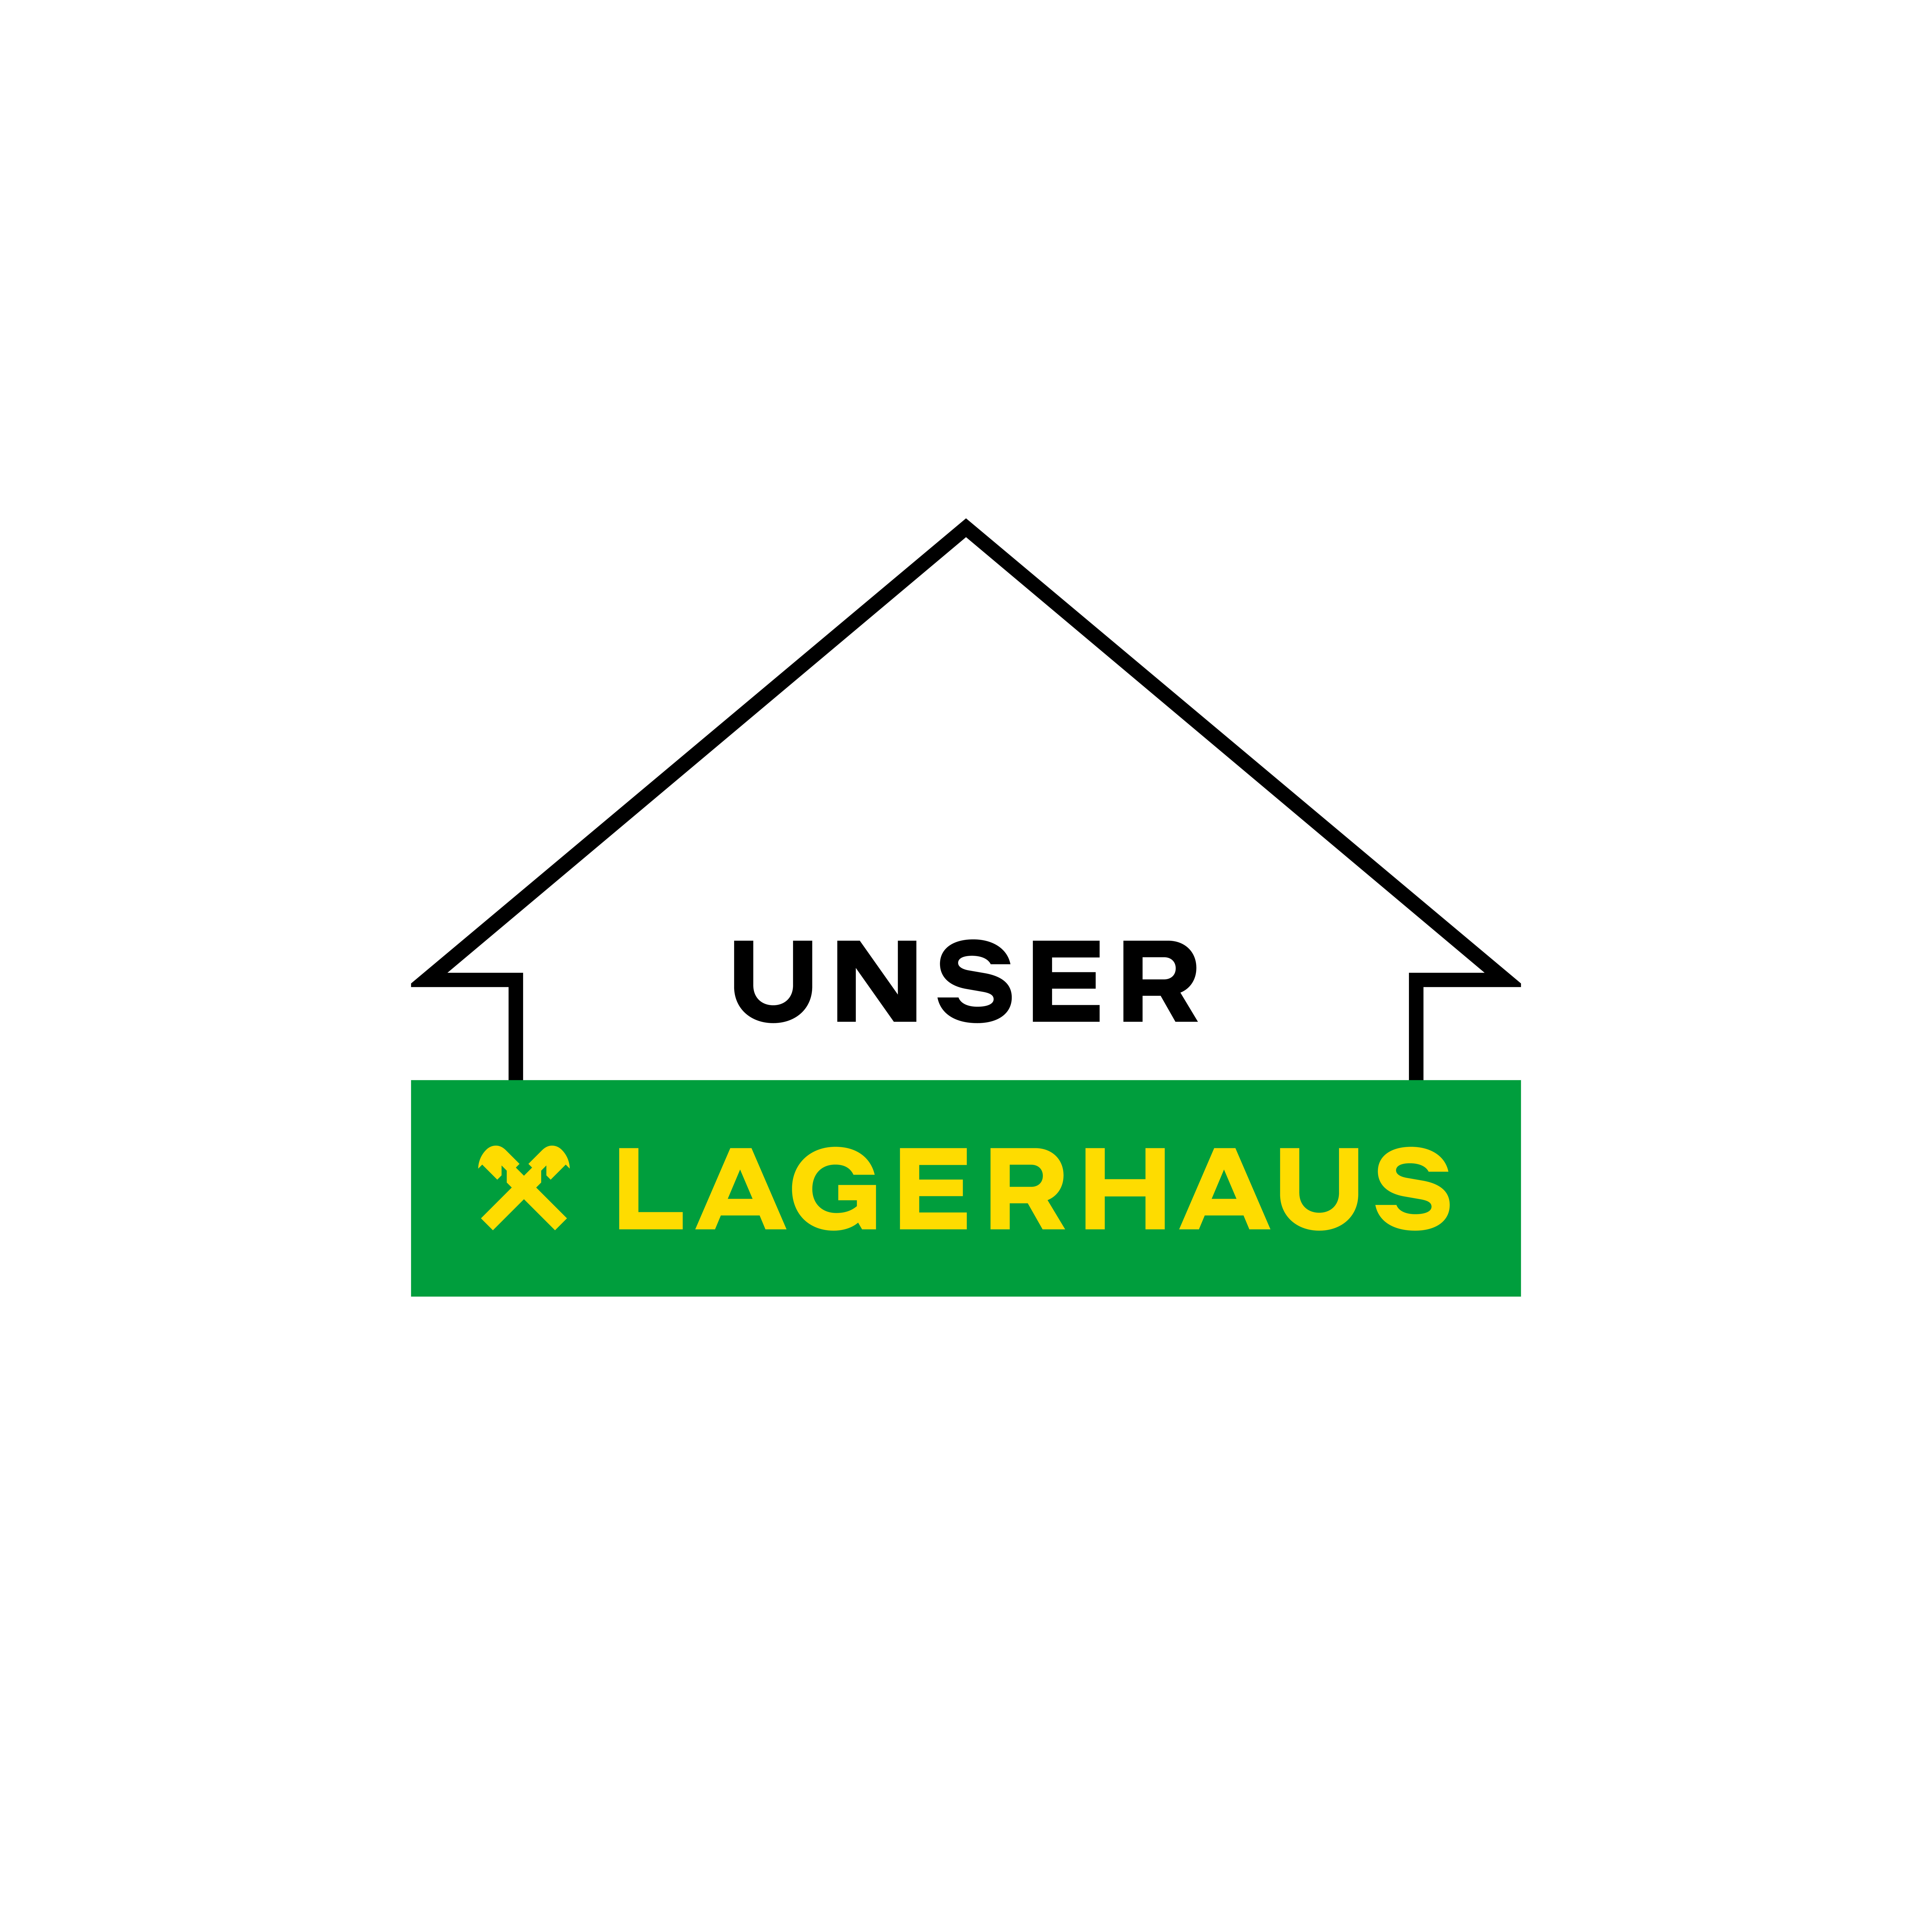 UNSER LAGERHAUS WarenhandelsgesmbH in Althofen